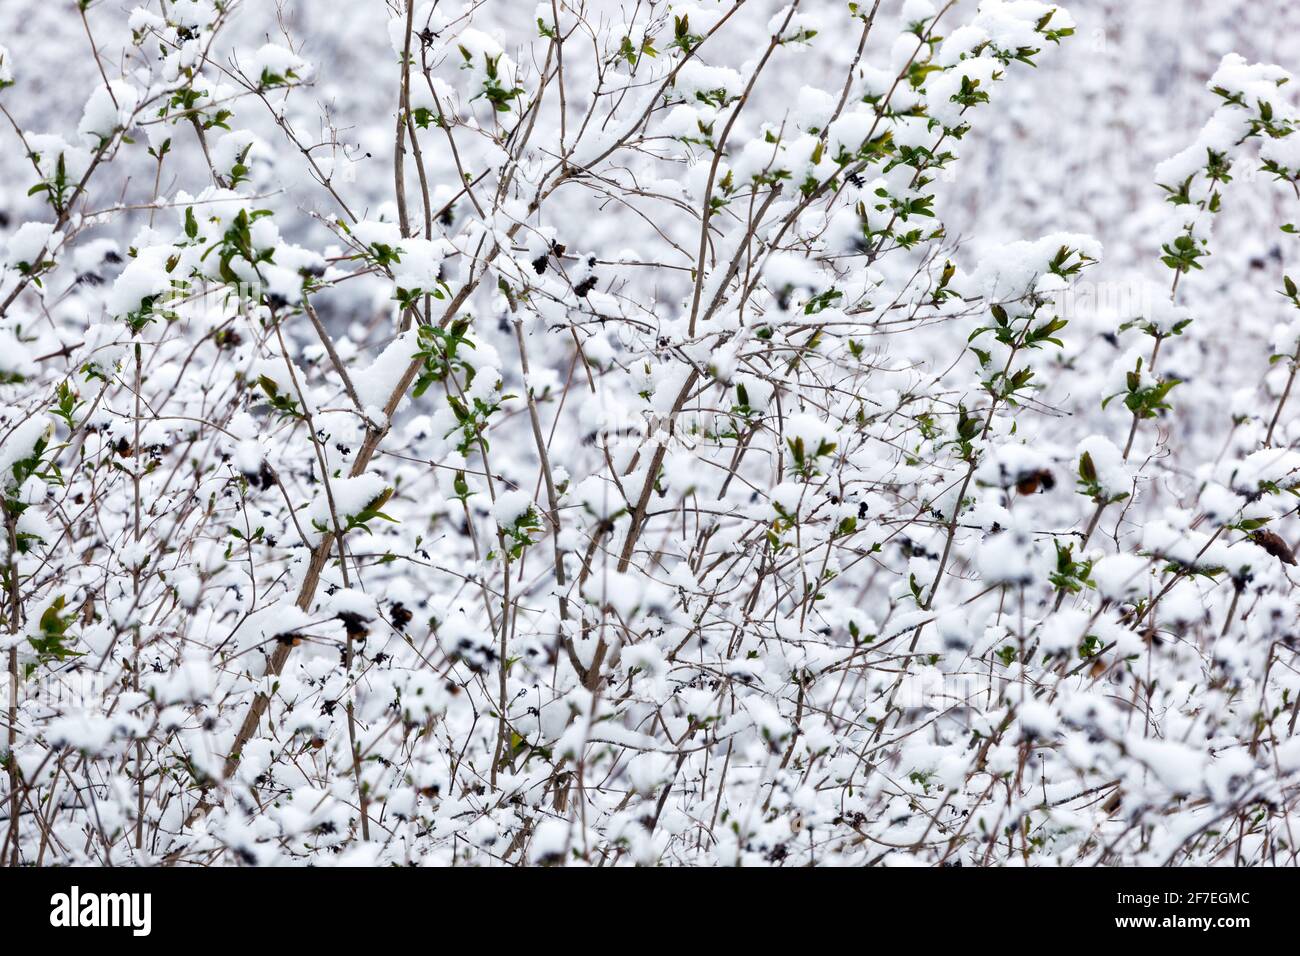 Winterschneeszene Strauch in weißen Stielen Stockfoto